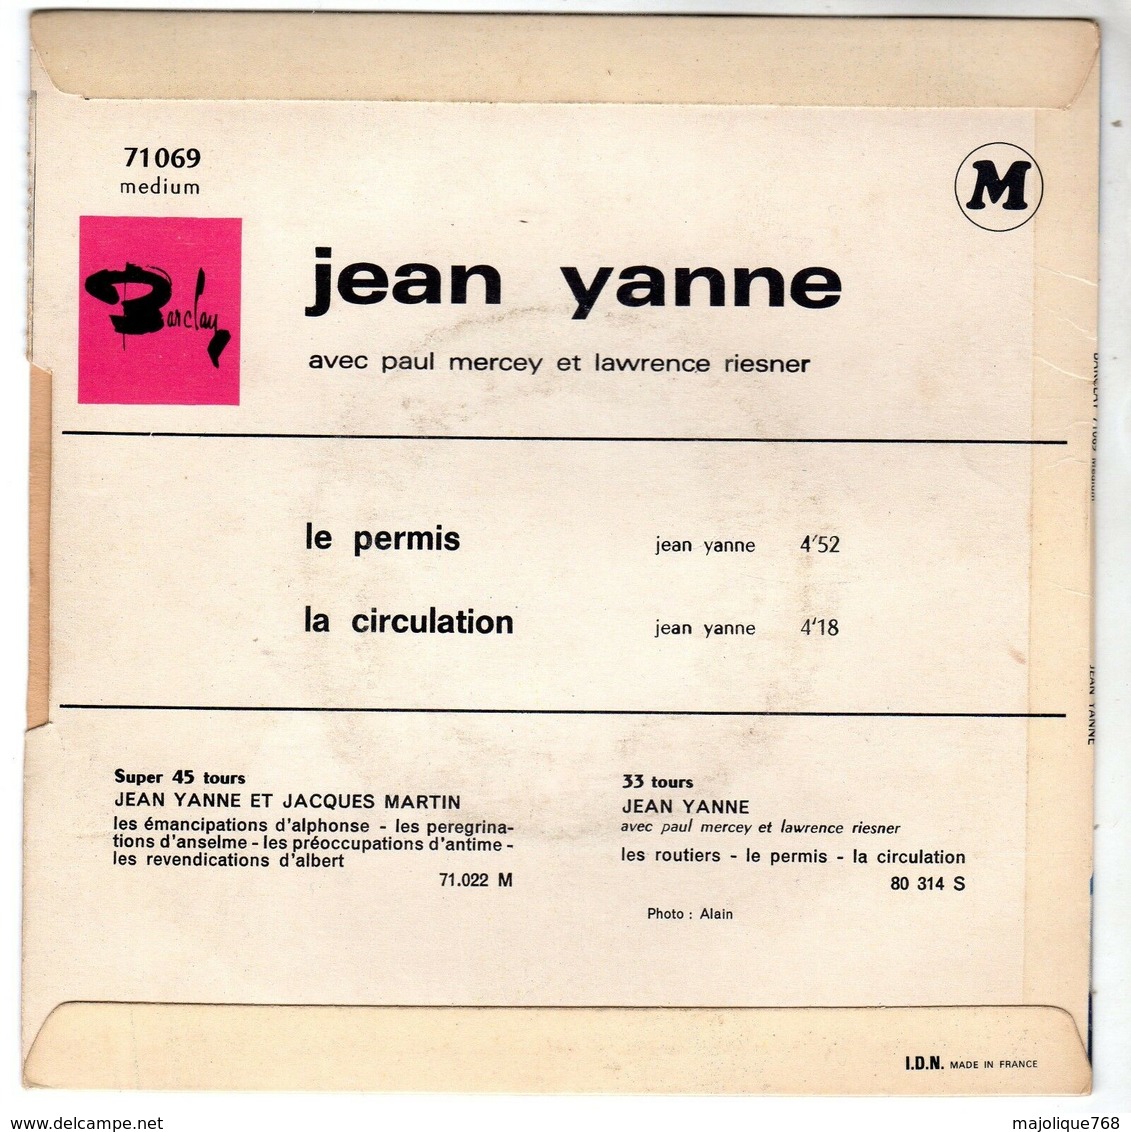 Disque De Jean Yanne - Le Permis - Barclay 71069 M - 1967 - - Cómica